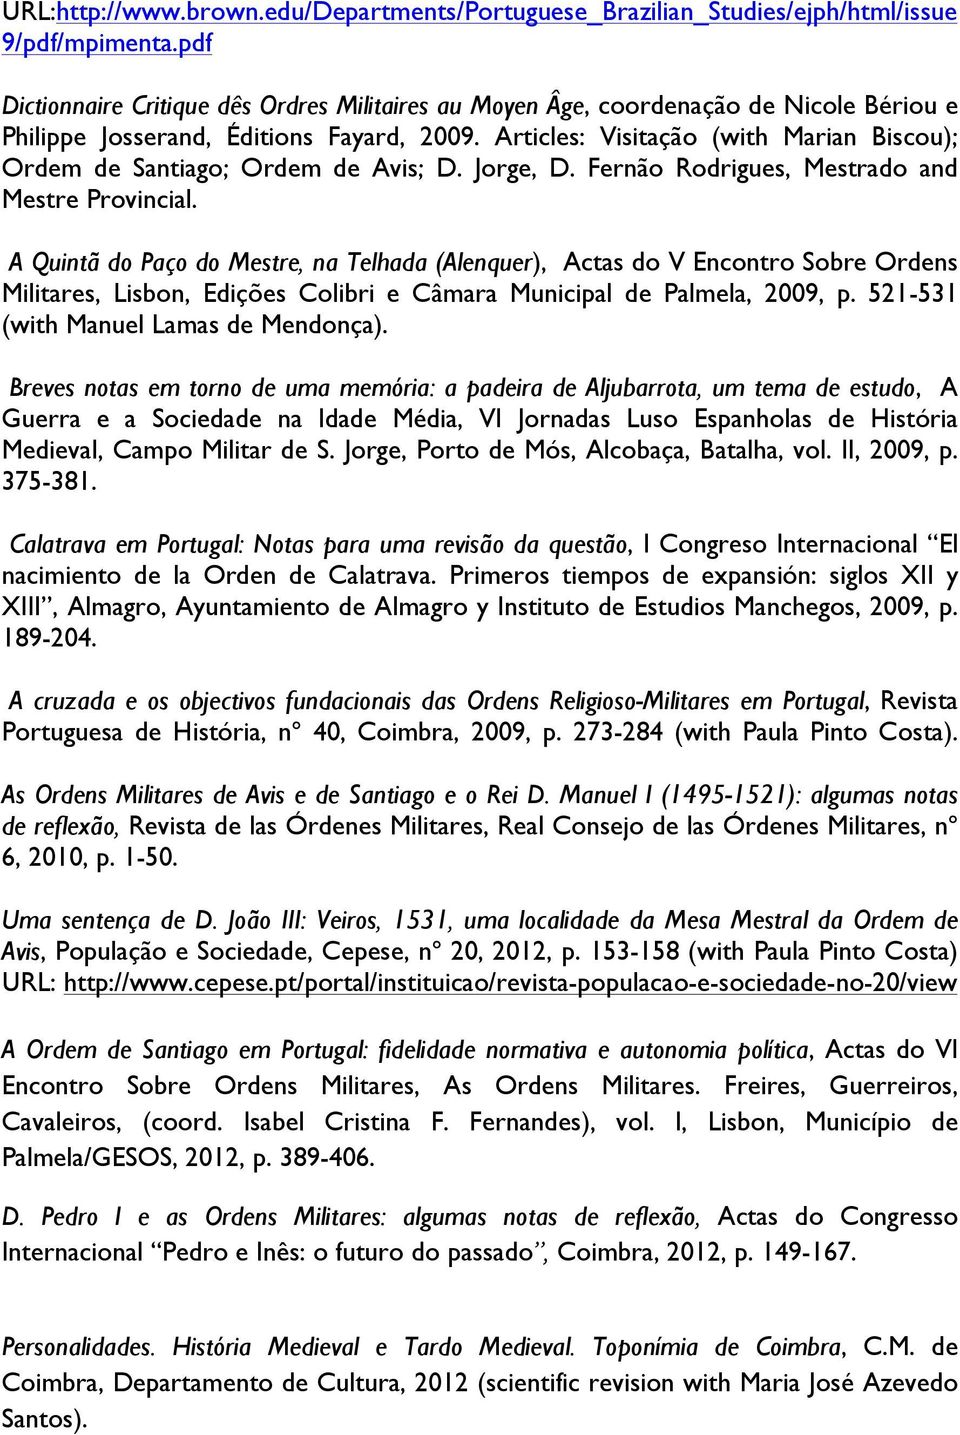 Articles: Visitação (with Marian Biscou); Ordem de Santiago; Ordem de Avis; D. Jorge, D. Fernão Rodrigues, Mestrado and Mestre Provincial.